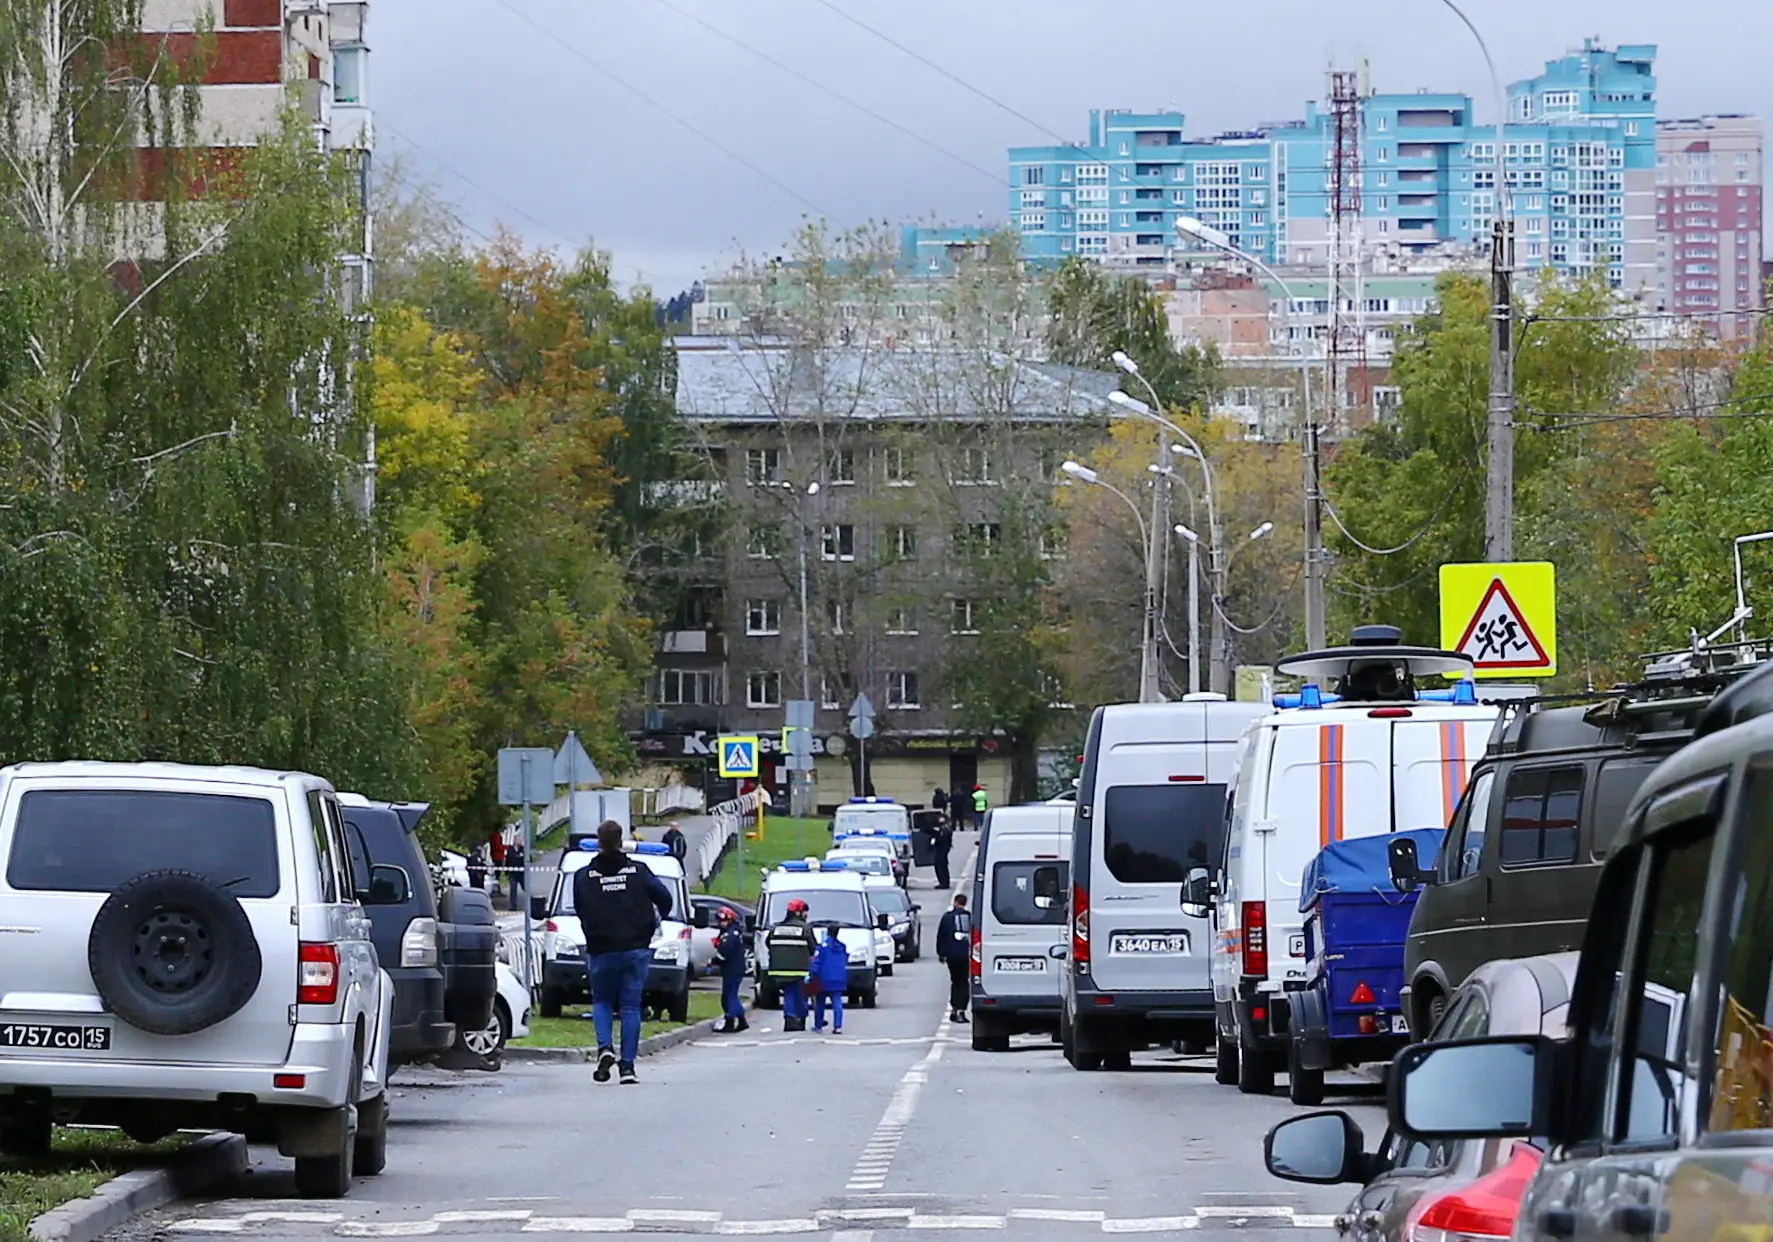 Escola russa de Izhevsk, alvo de um ataque a tiro em que morreram pelo menos 13 pessoas, entre elas sete crianças